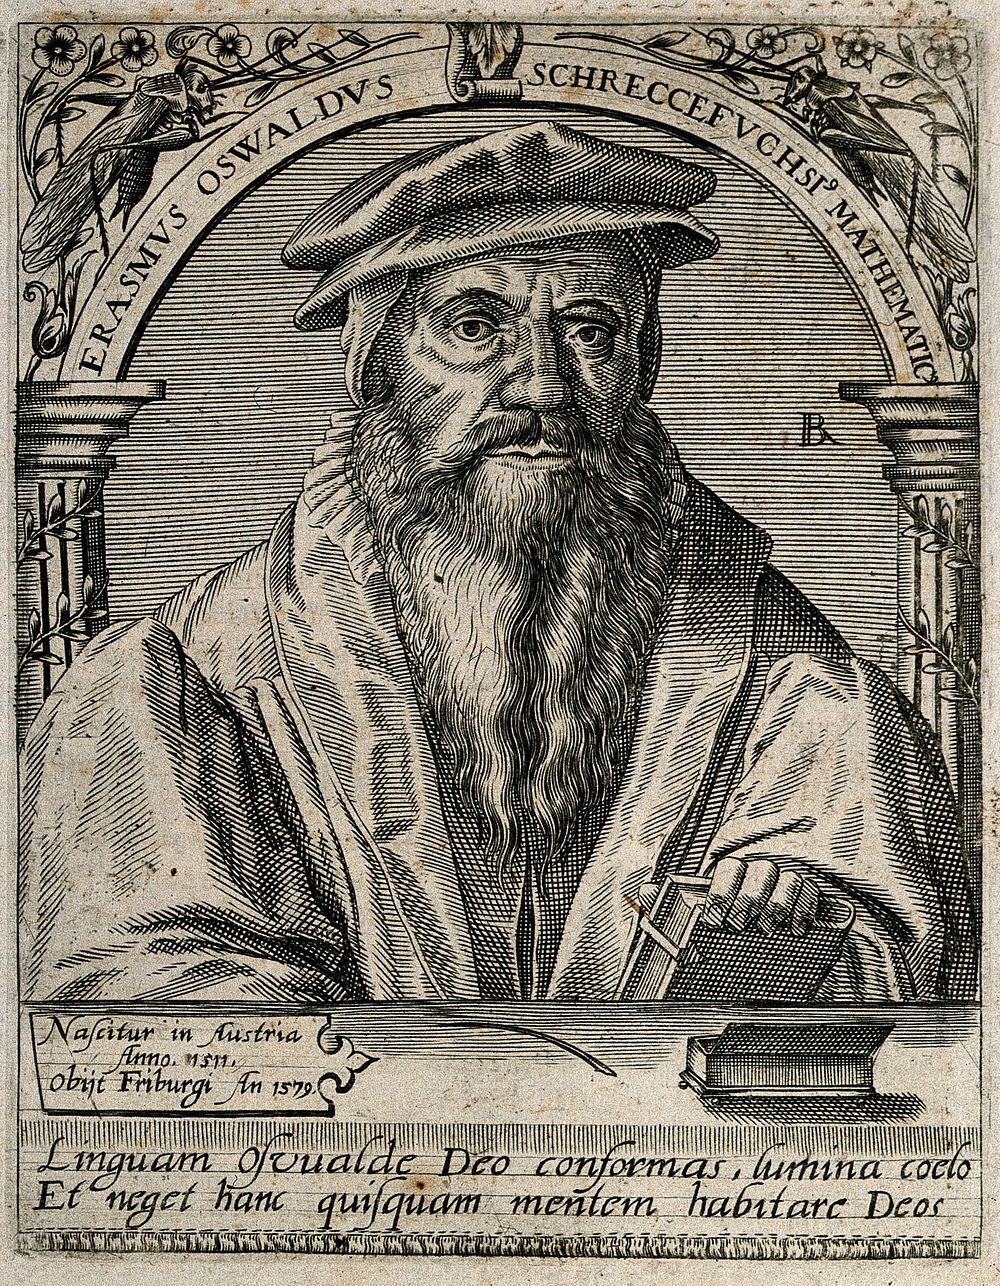 Erasmus Oswald Schreckefuchs. Line engraving by T. de Bry.